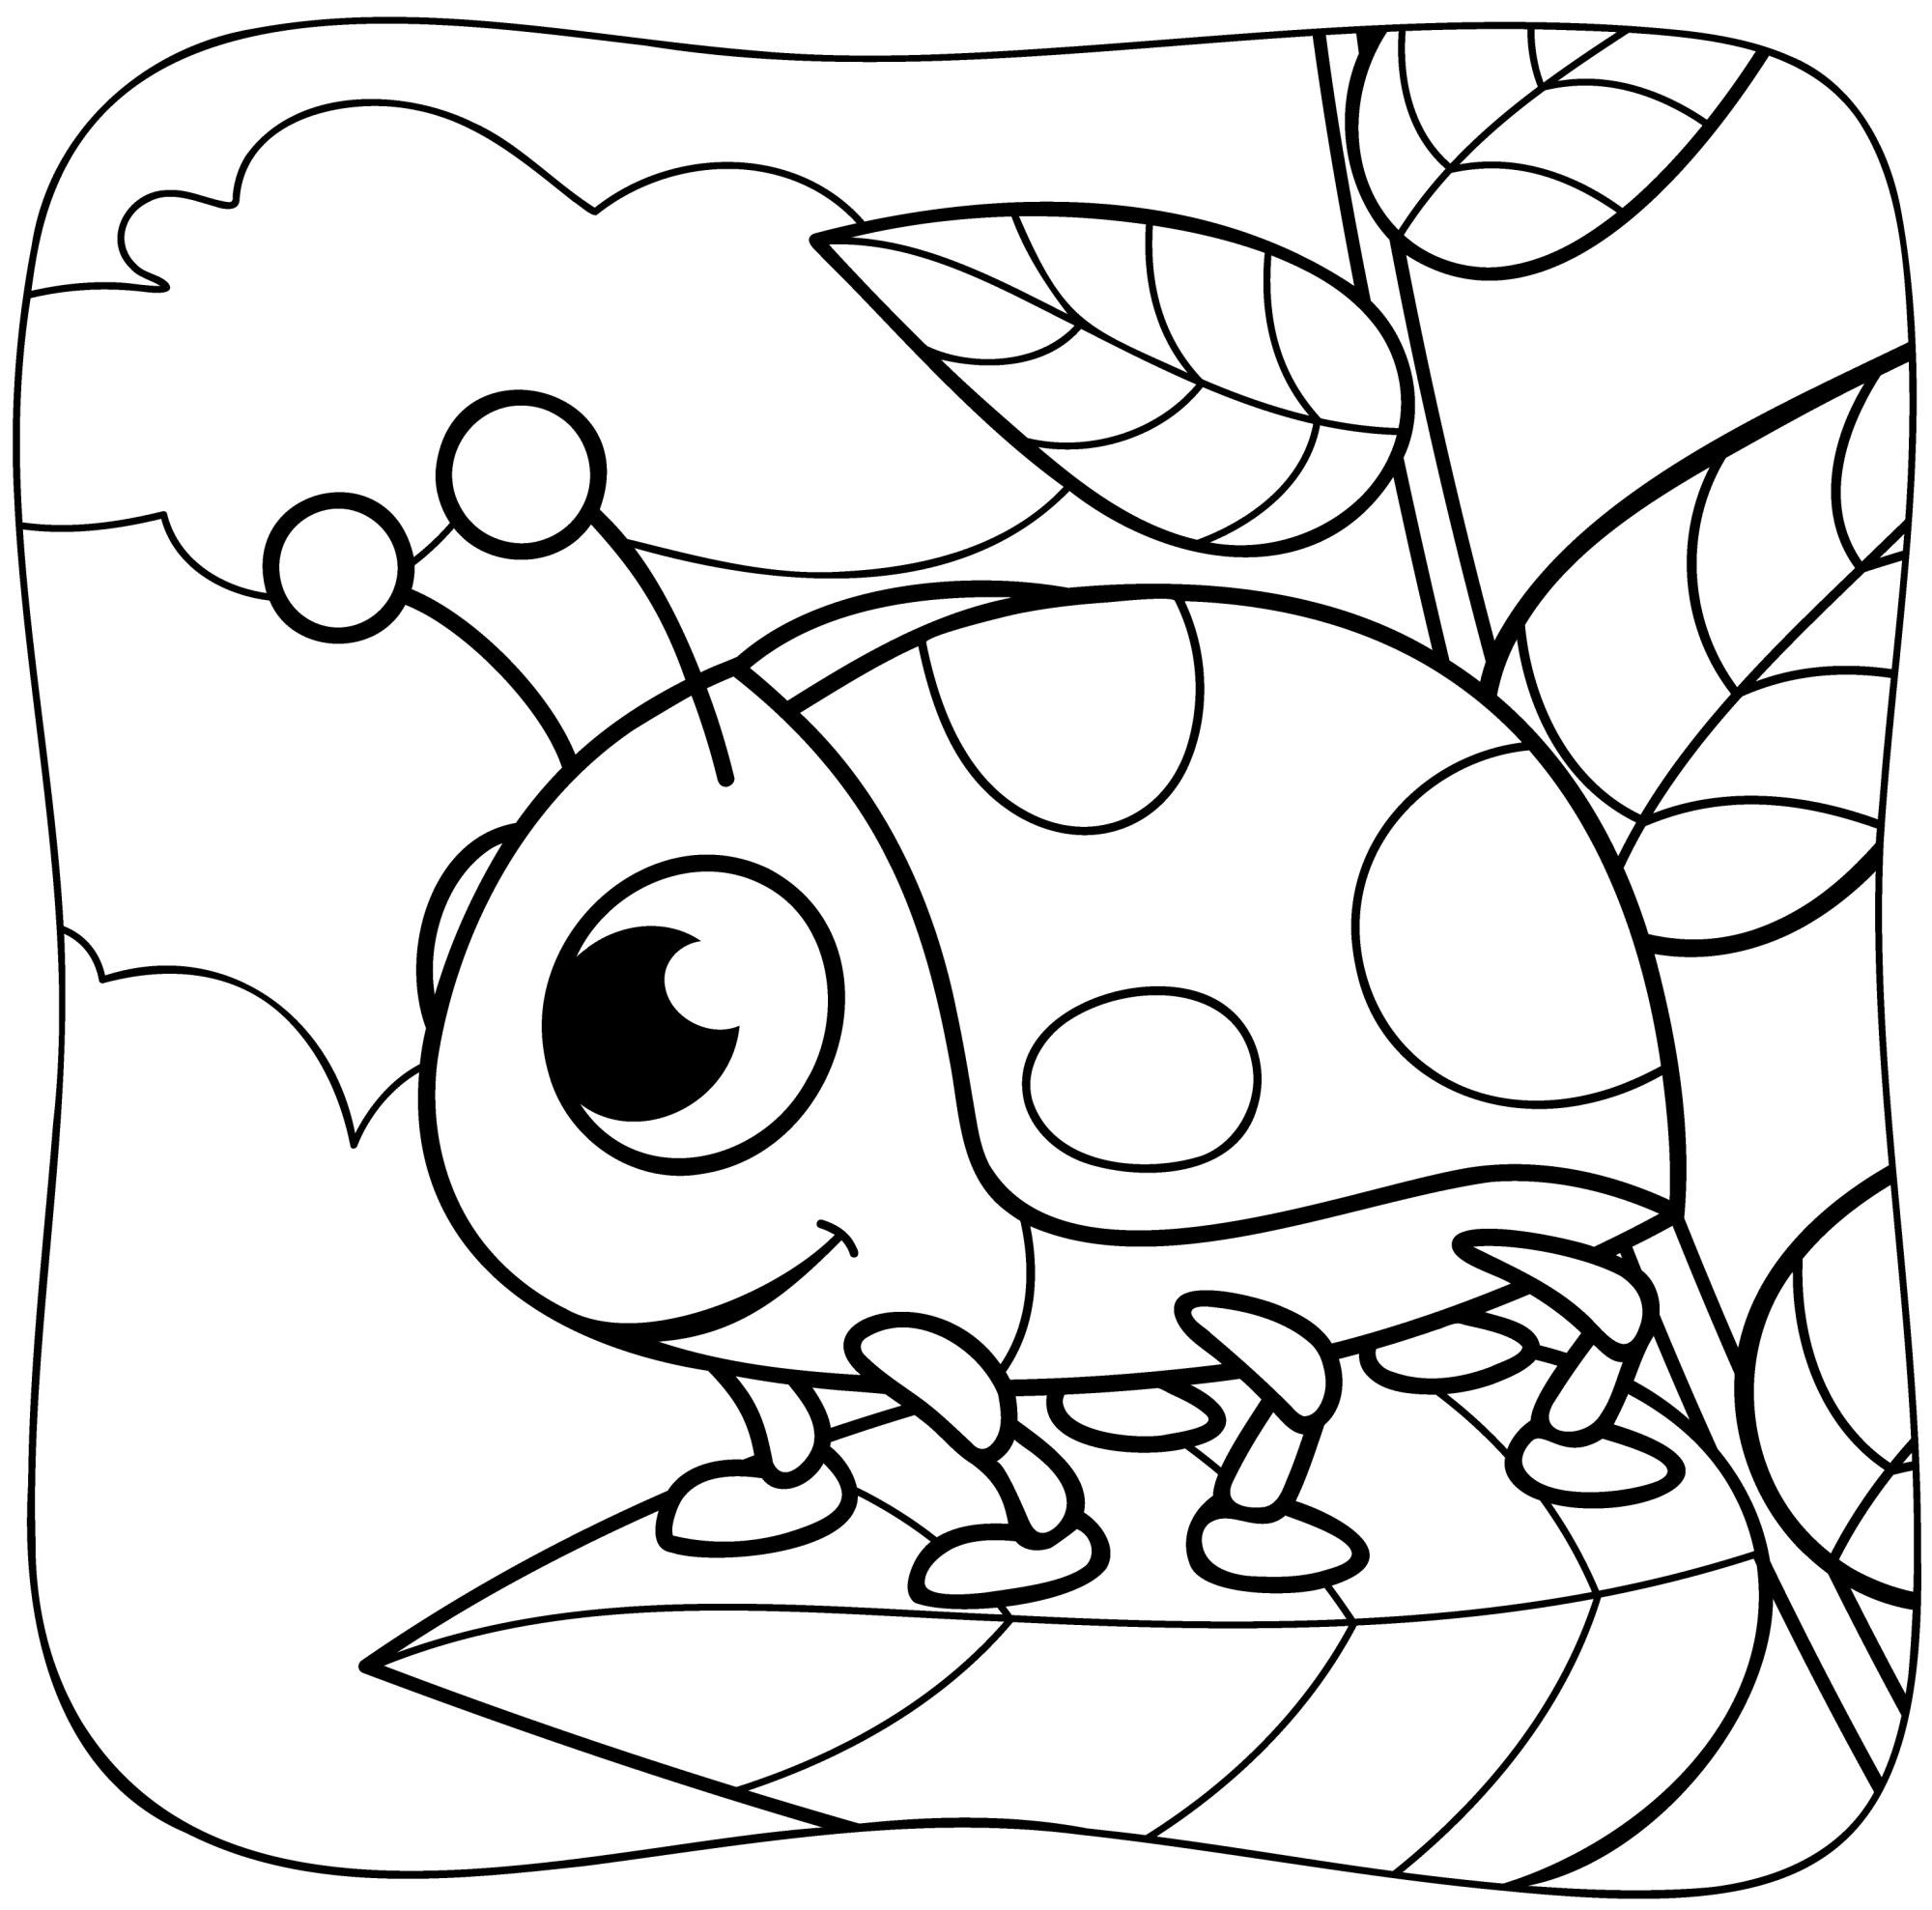 Раскраска для детей: божья коровка на дереве в лесу сидит на листике